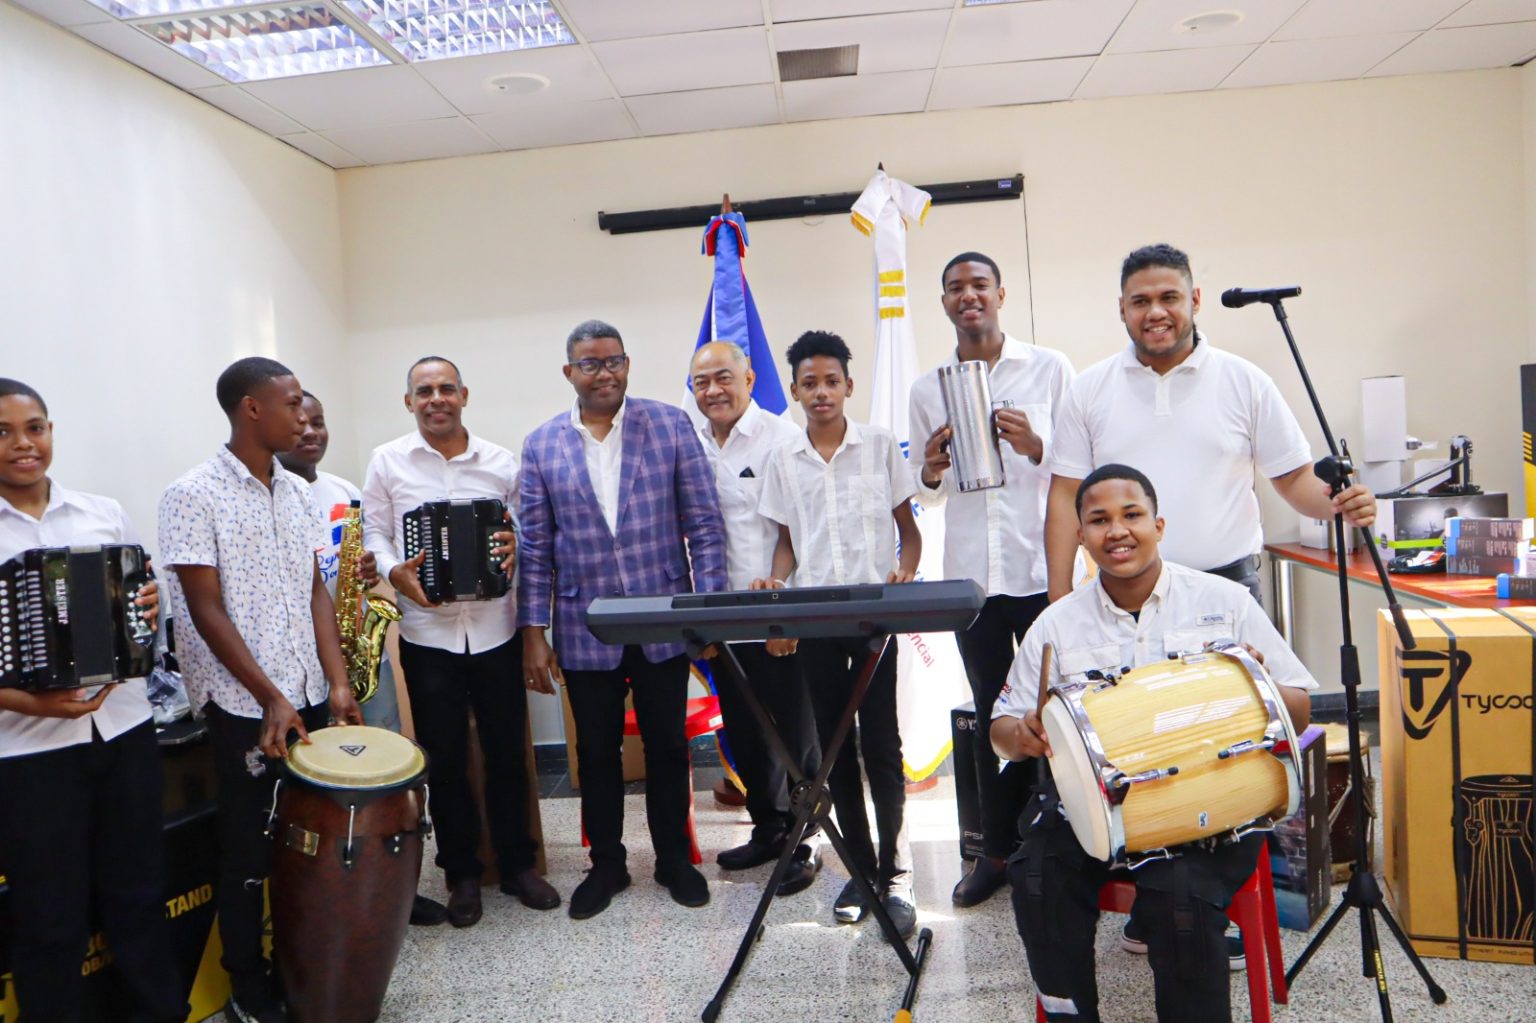 Gobierno entrega instrumentos a escuela de musica tipica en Santo Domingo Oeste